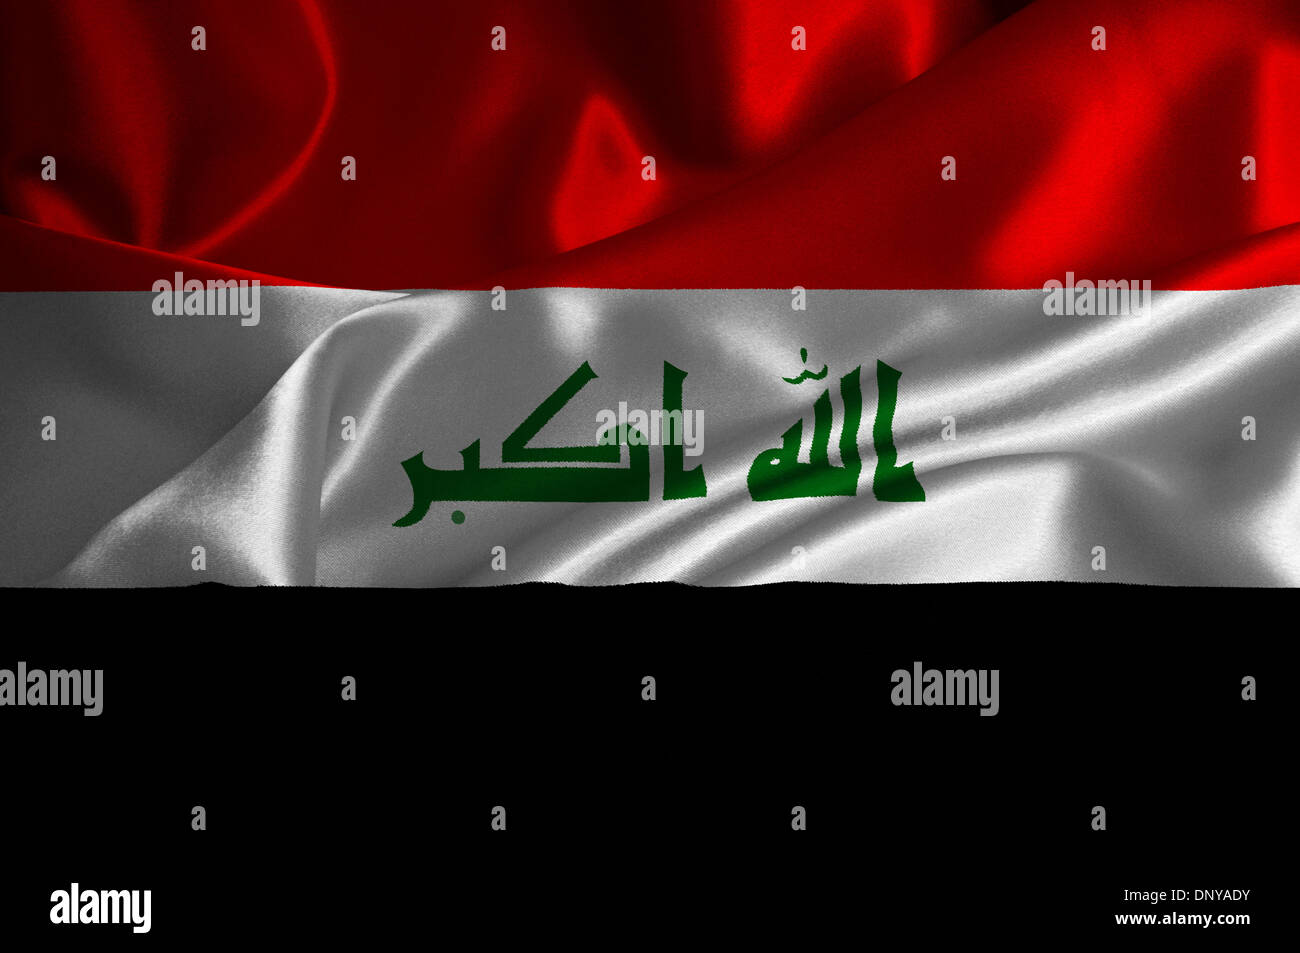 Iraq flag on satin texture. Stock Photo